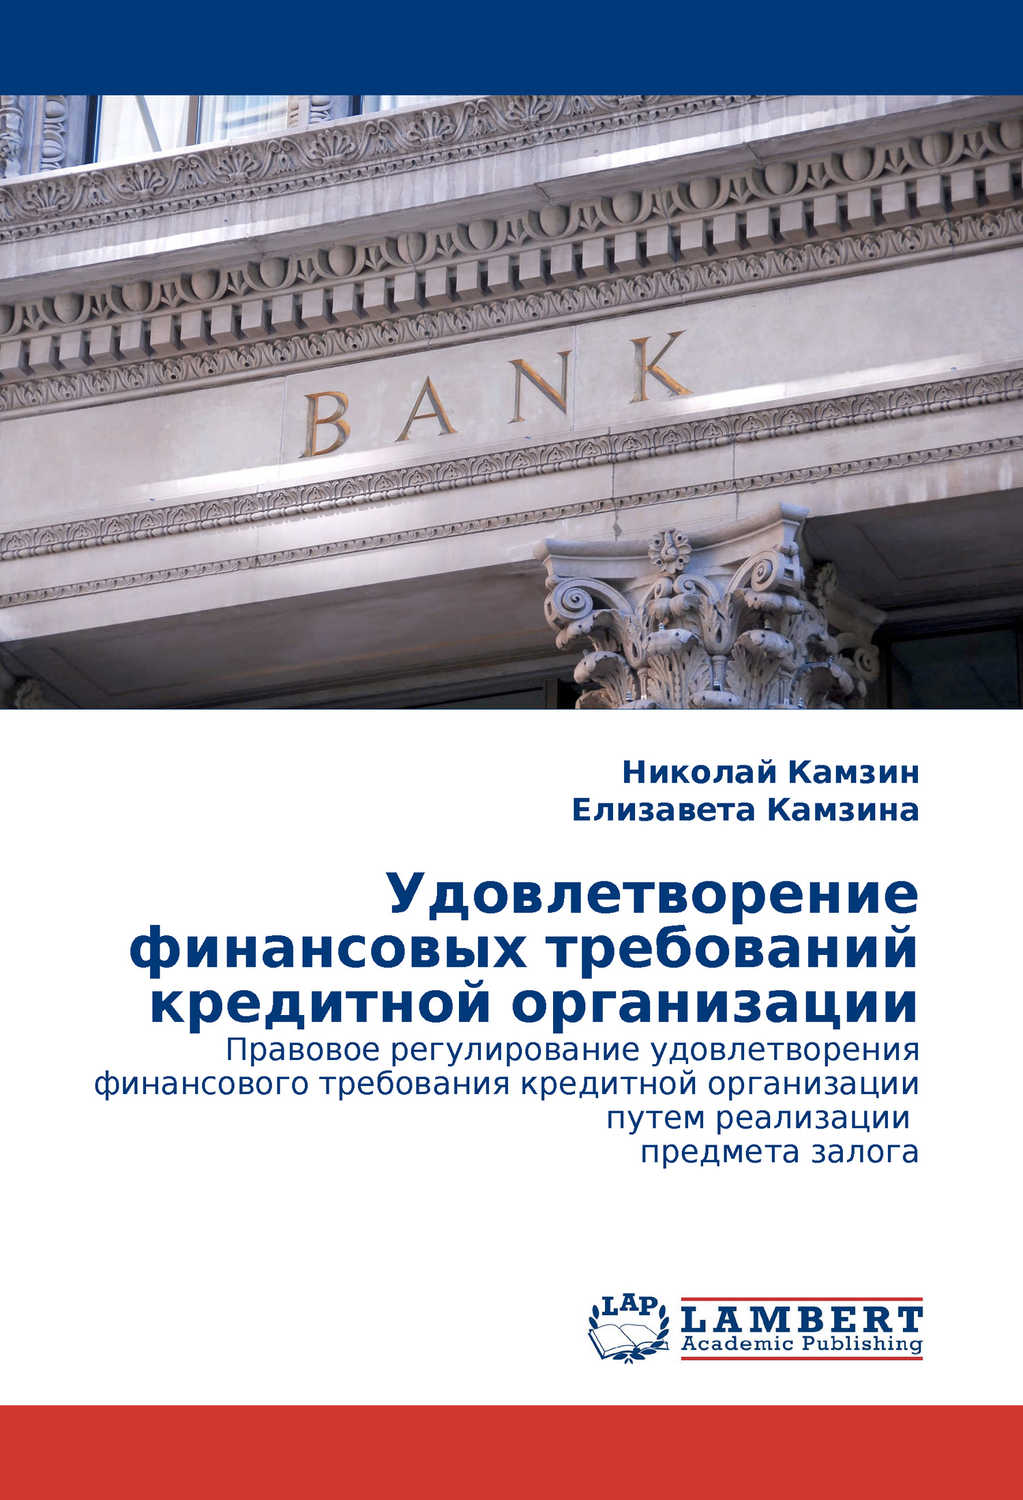 Камзин Николай, Камзина Елизавета - «Удовлетворение финансовых требований кредитной организации»